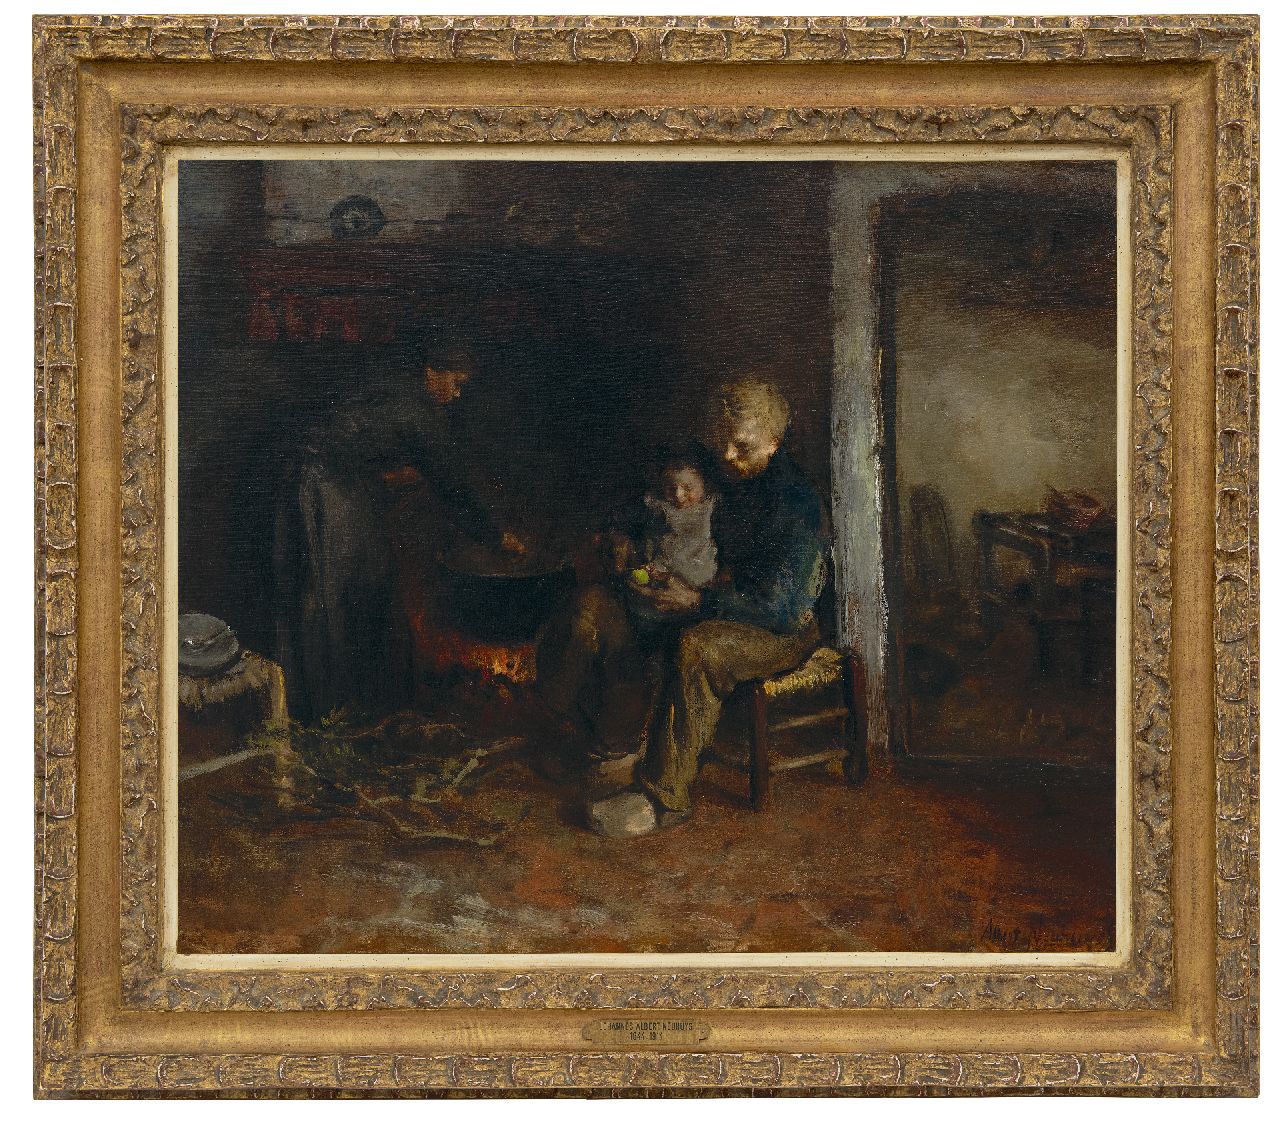 Neuhuys J.A.  | Johannes 'Albert' Neuhuys | Schilderijen te koop aangeboden | Boerenfamilie, olieverf op doek 51,0 x 60,3 cm, gesigneerd rechtsonder